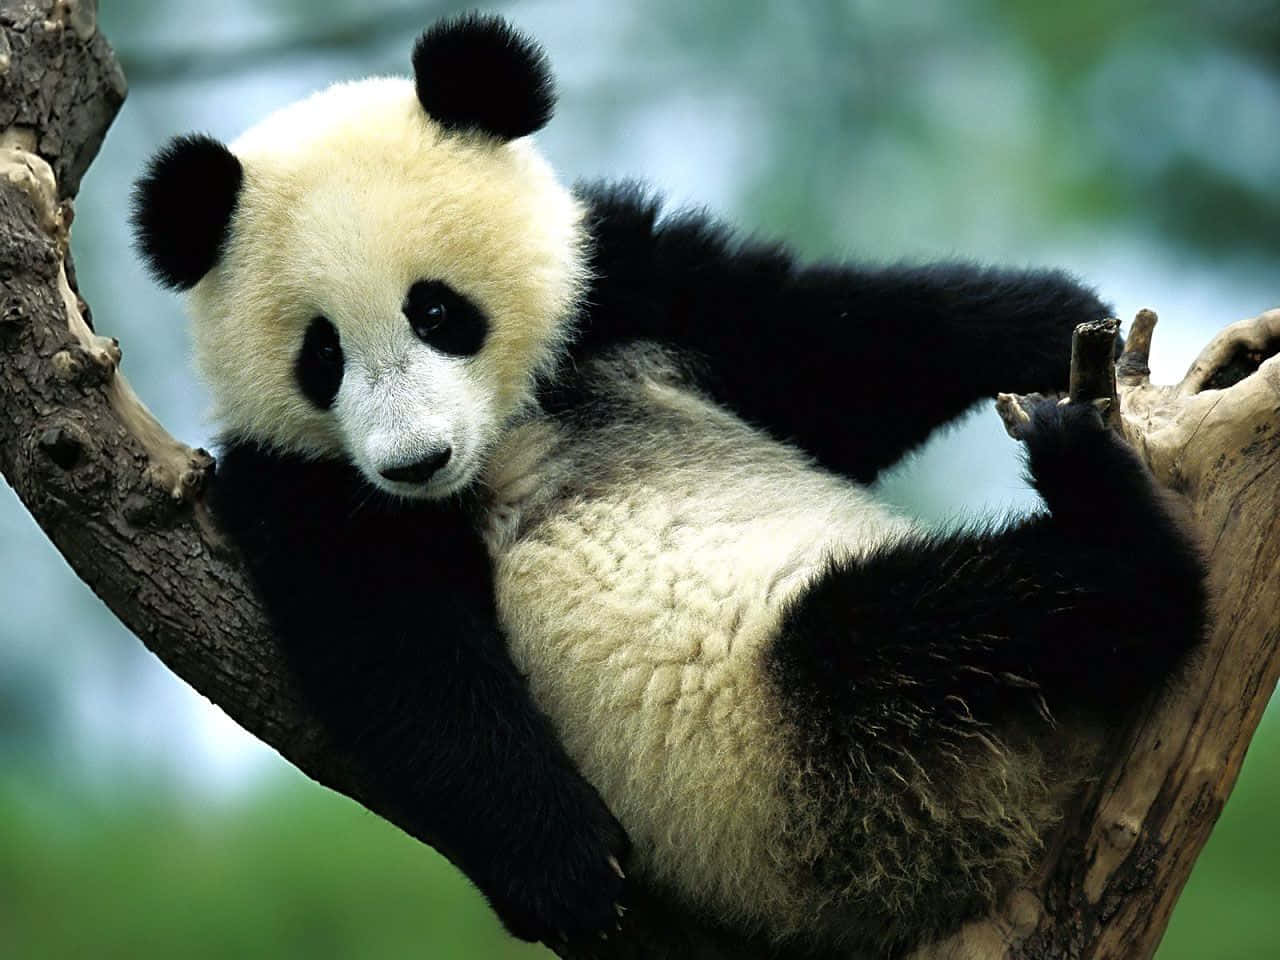 Umailustração De Um Panda Gigante Em Seu Habitat Natural